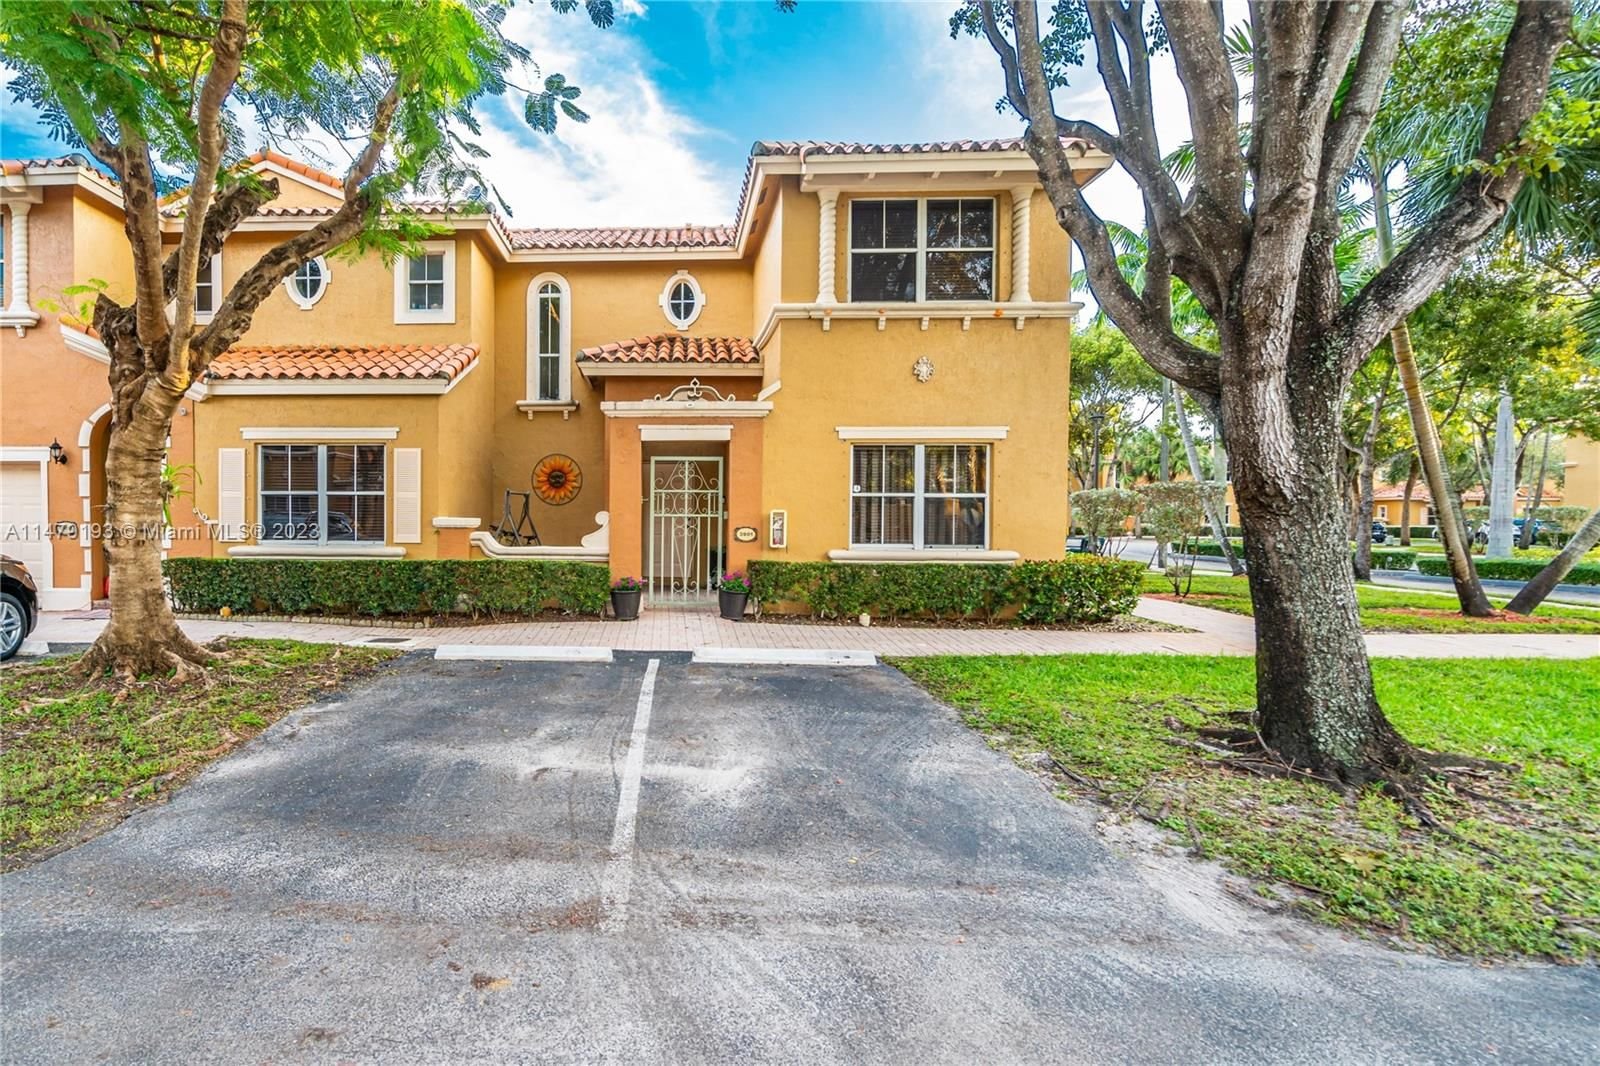 Real estate property located at 8444 141st Ter #3901, Miami-Dade County, VILLA VIZCAYA CONDO, Miami Lakes, FL